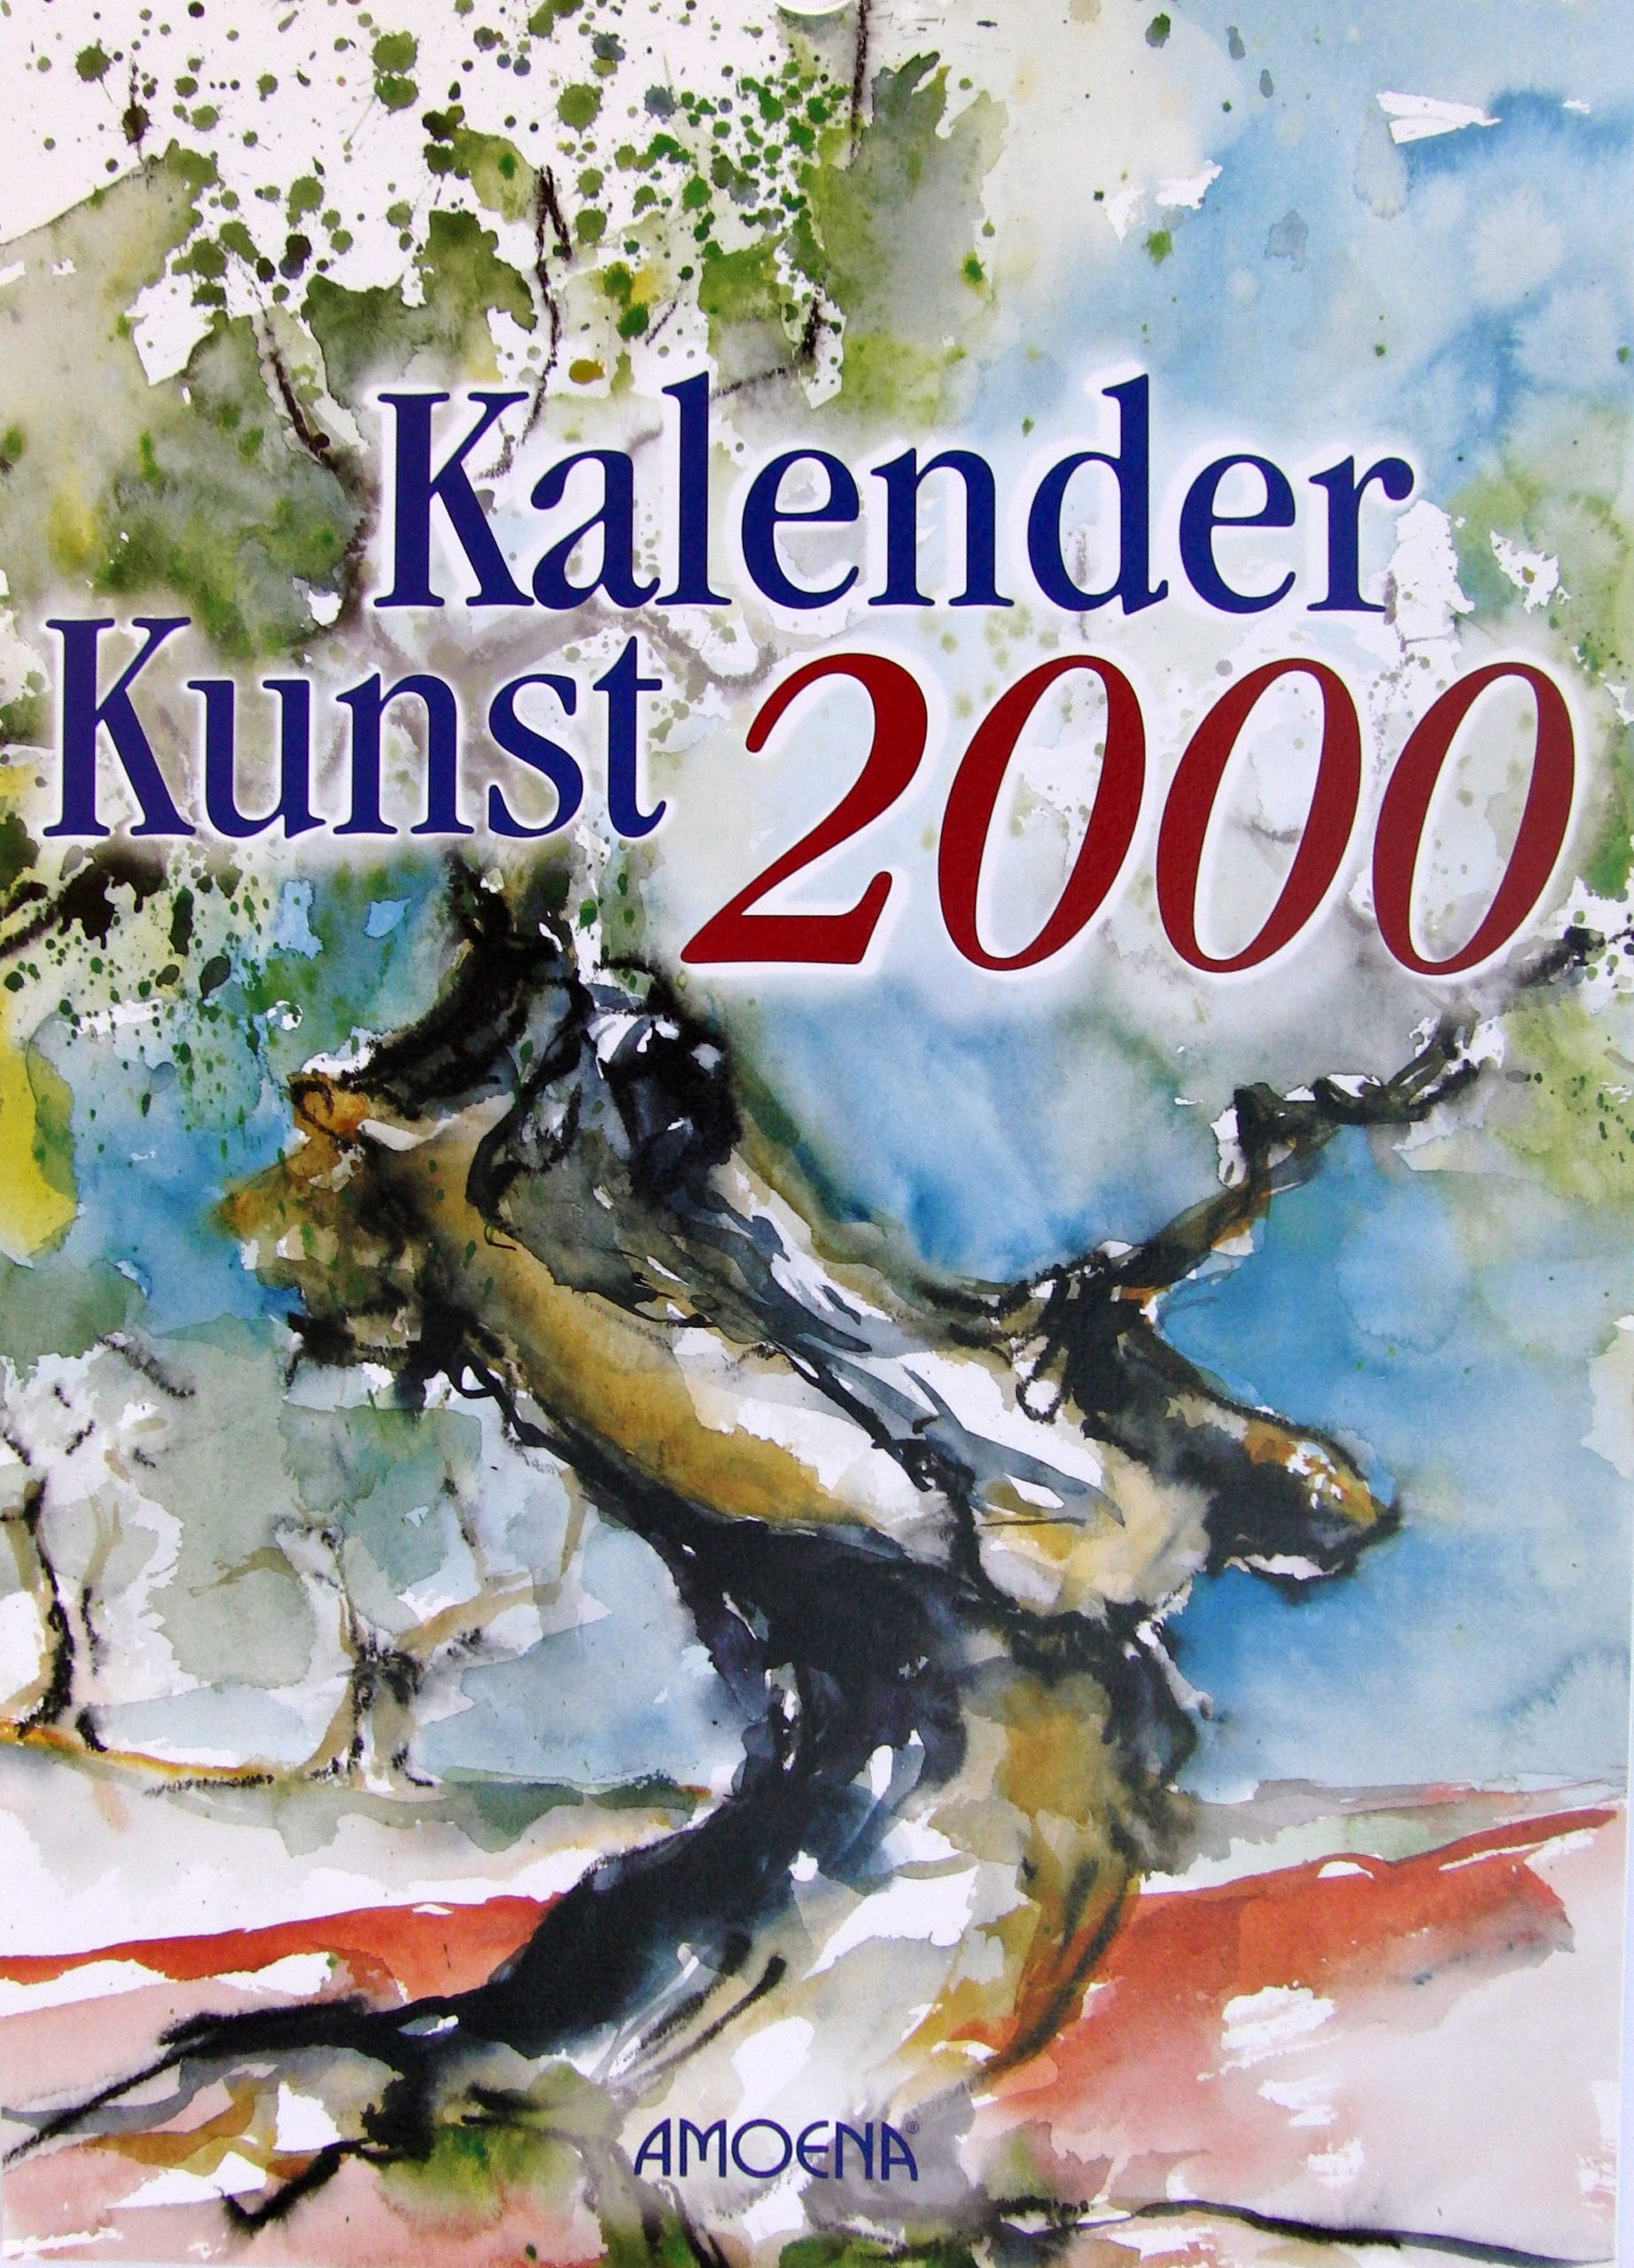 Kalender Kunst CIMG0230